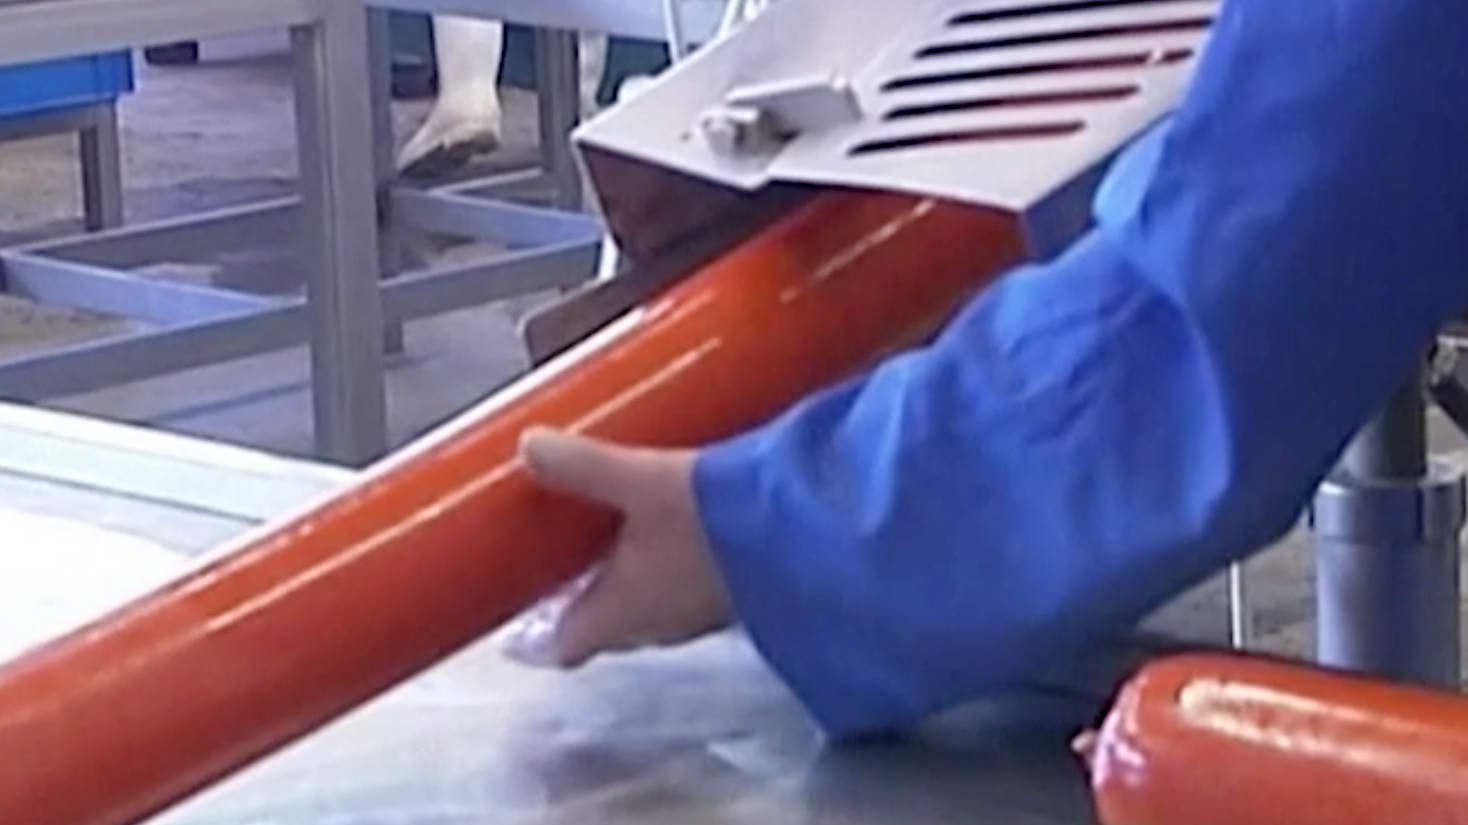 Производители увидели риски нехватки оболочек для сосисок и колбасы